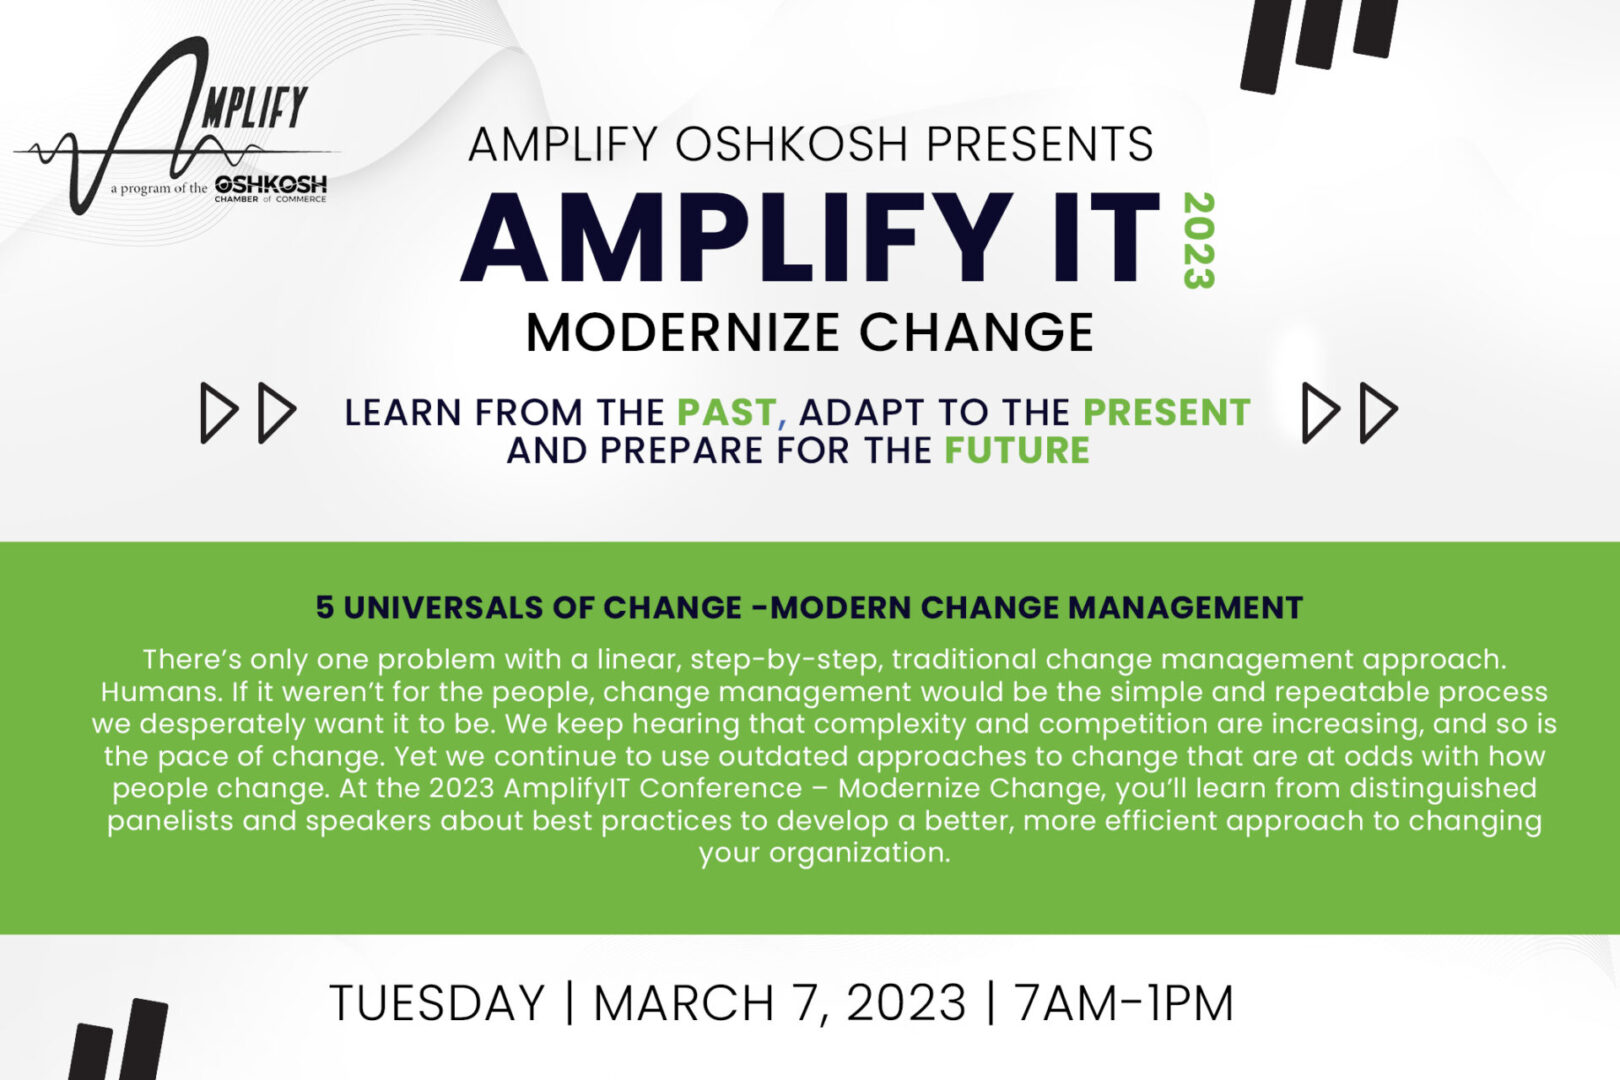 Amplify IT 2023 – Modernize Change